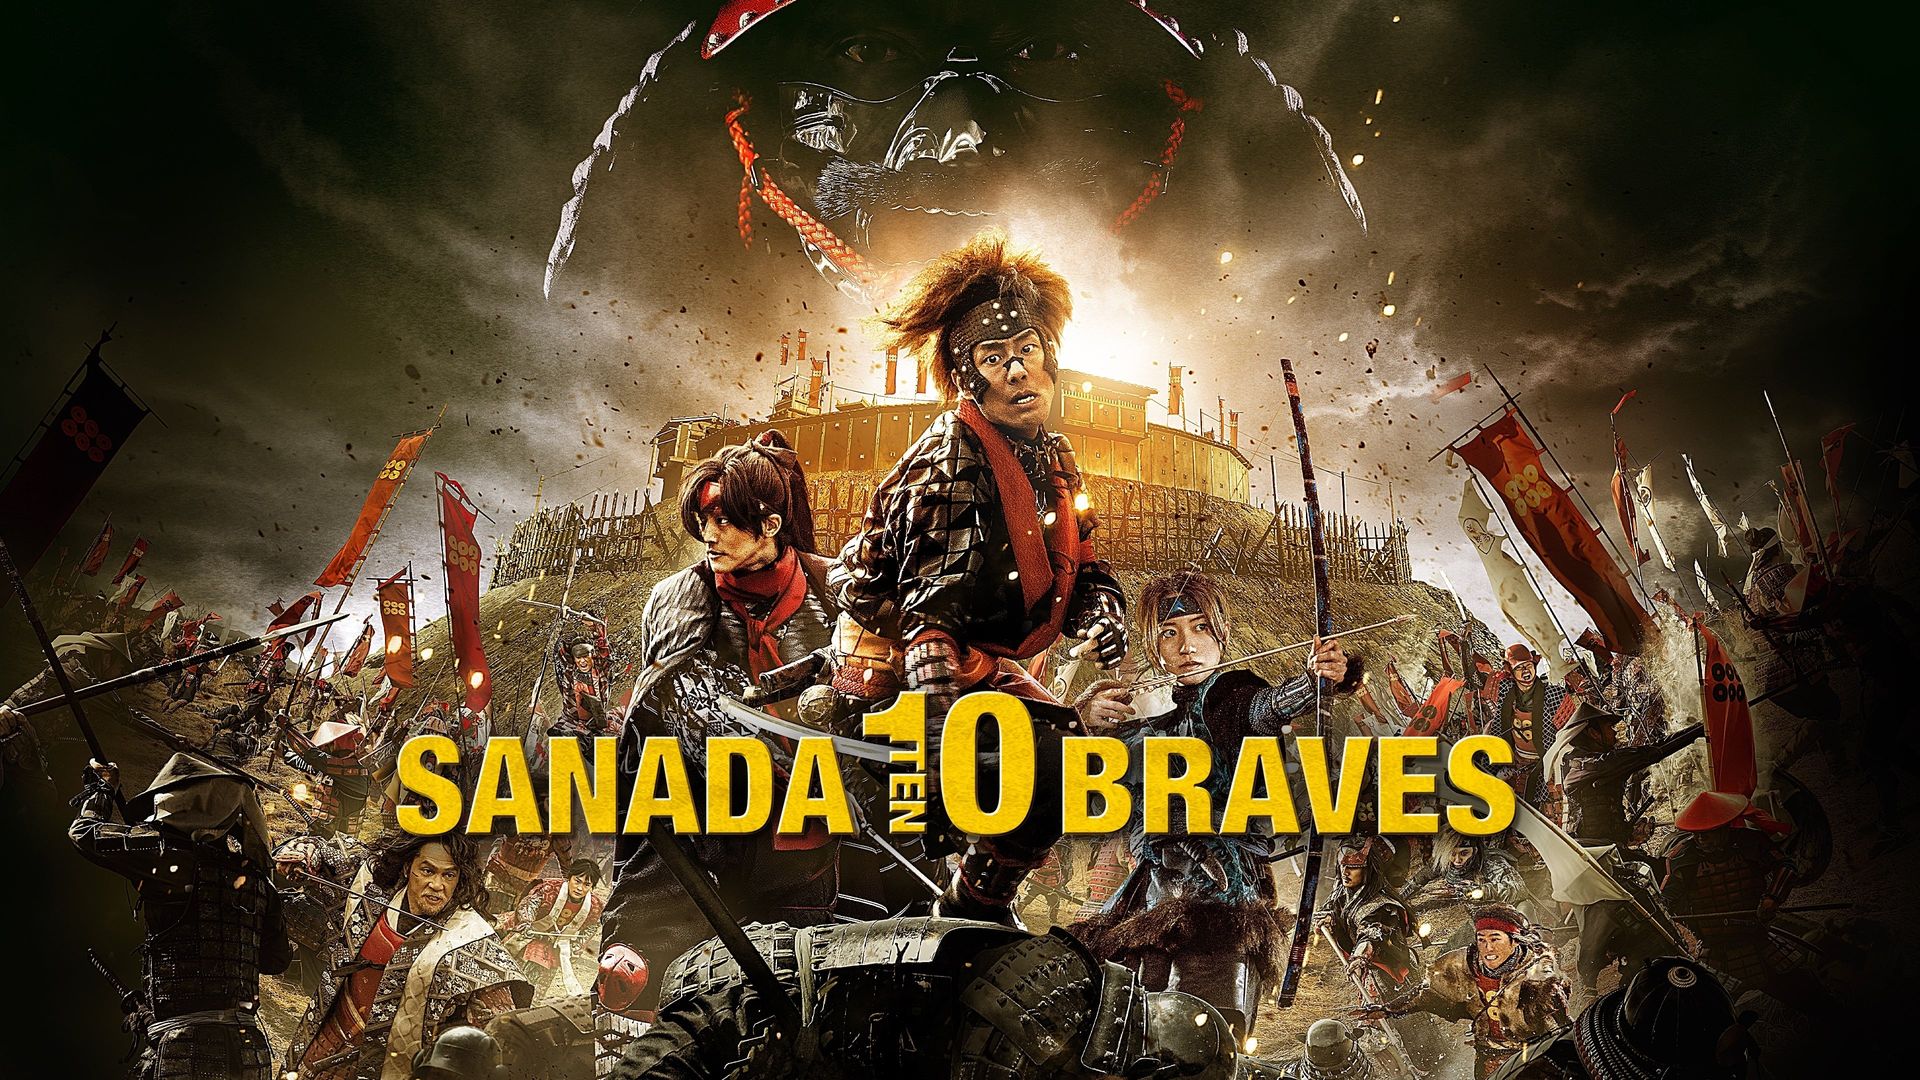 Sanada 10 Braves background